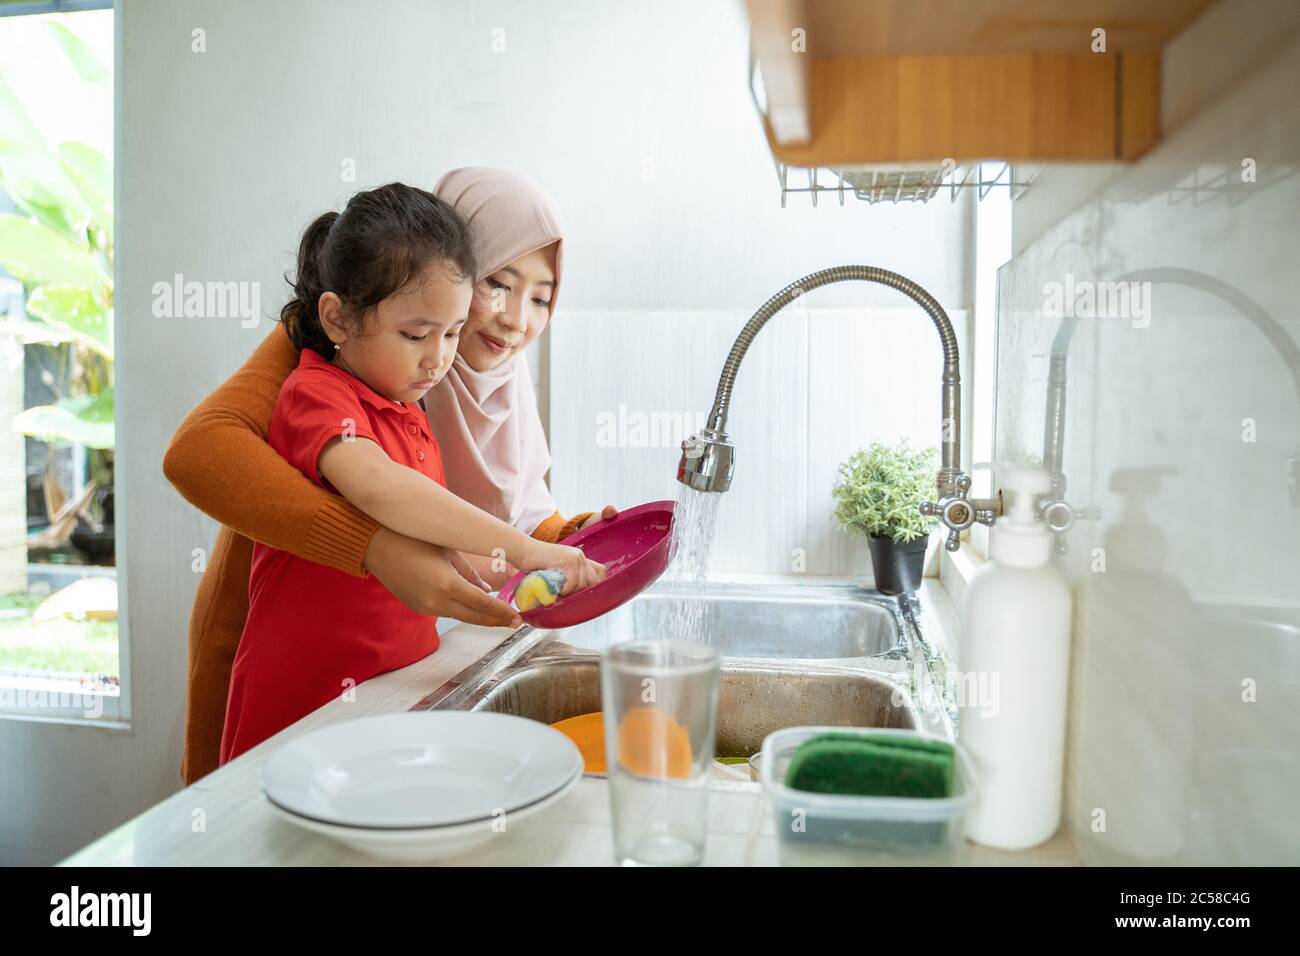 Helfende Hand. Nettes kleines Mädchen Helfen Sie ihr muslimische Mutter in Waschen Geschirr bei Familie Küche Stockfoto